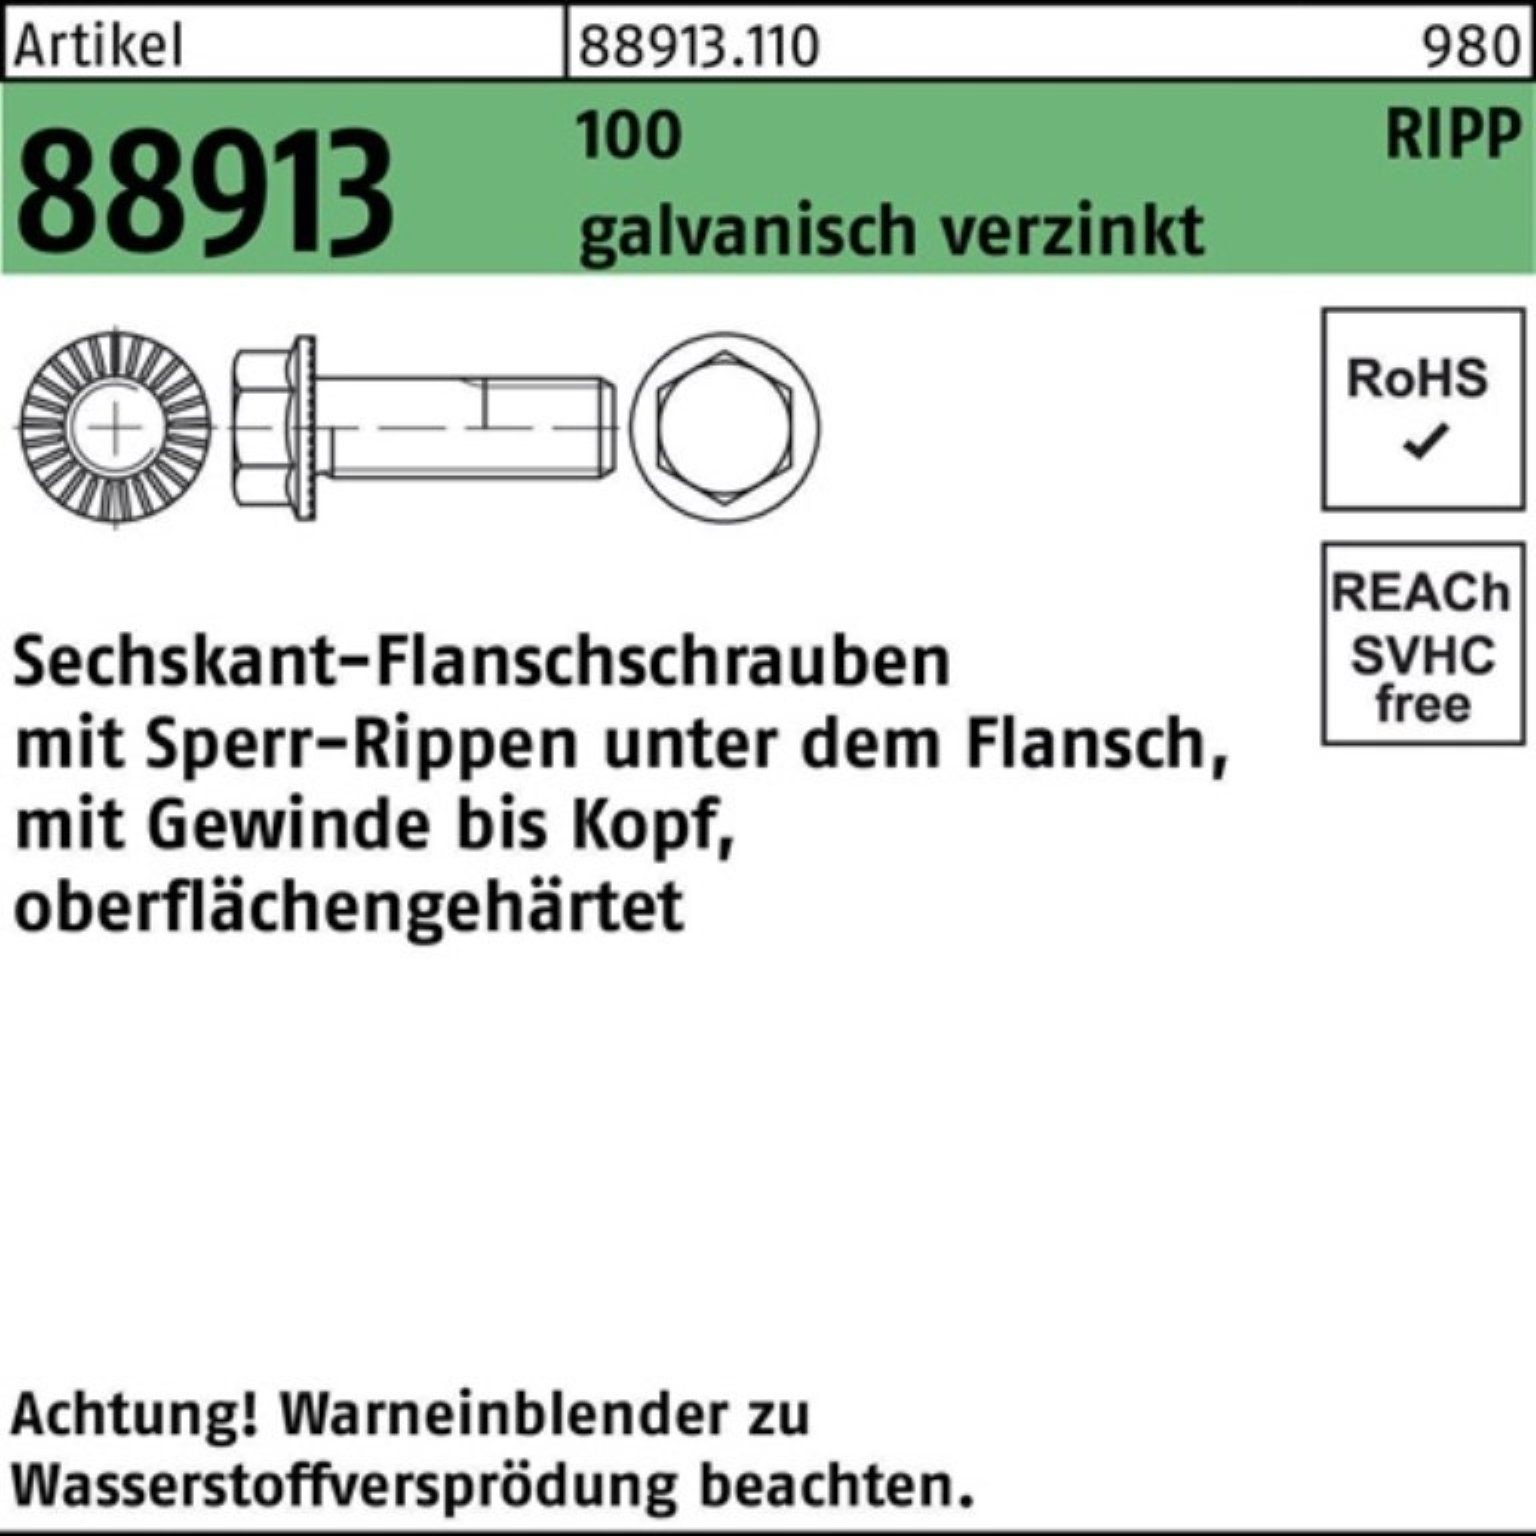 VG 88913 Reyher 100 ga Pack 200er M8x30 Schraube R Sechskantflanschschraube Sperr-Ripp